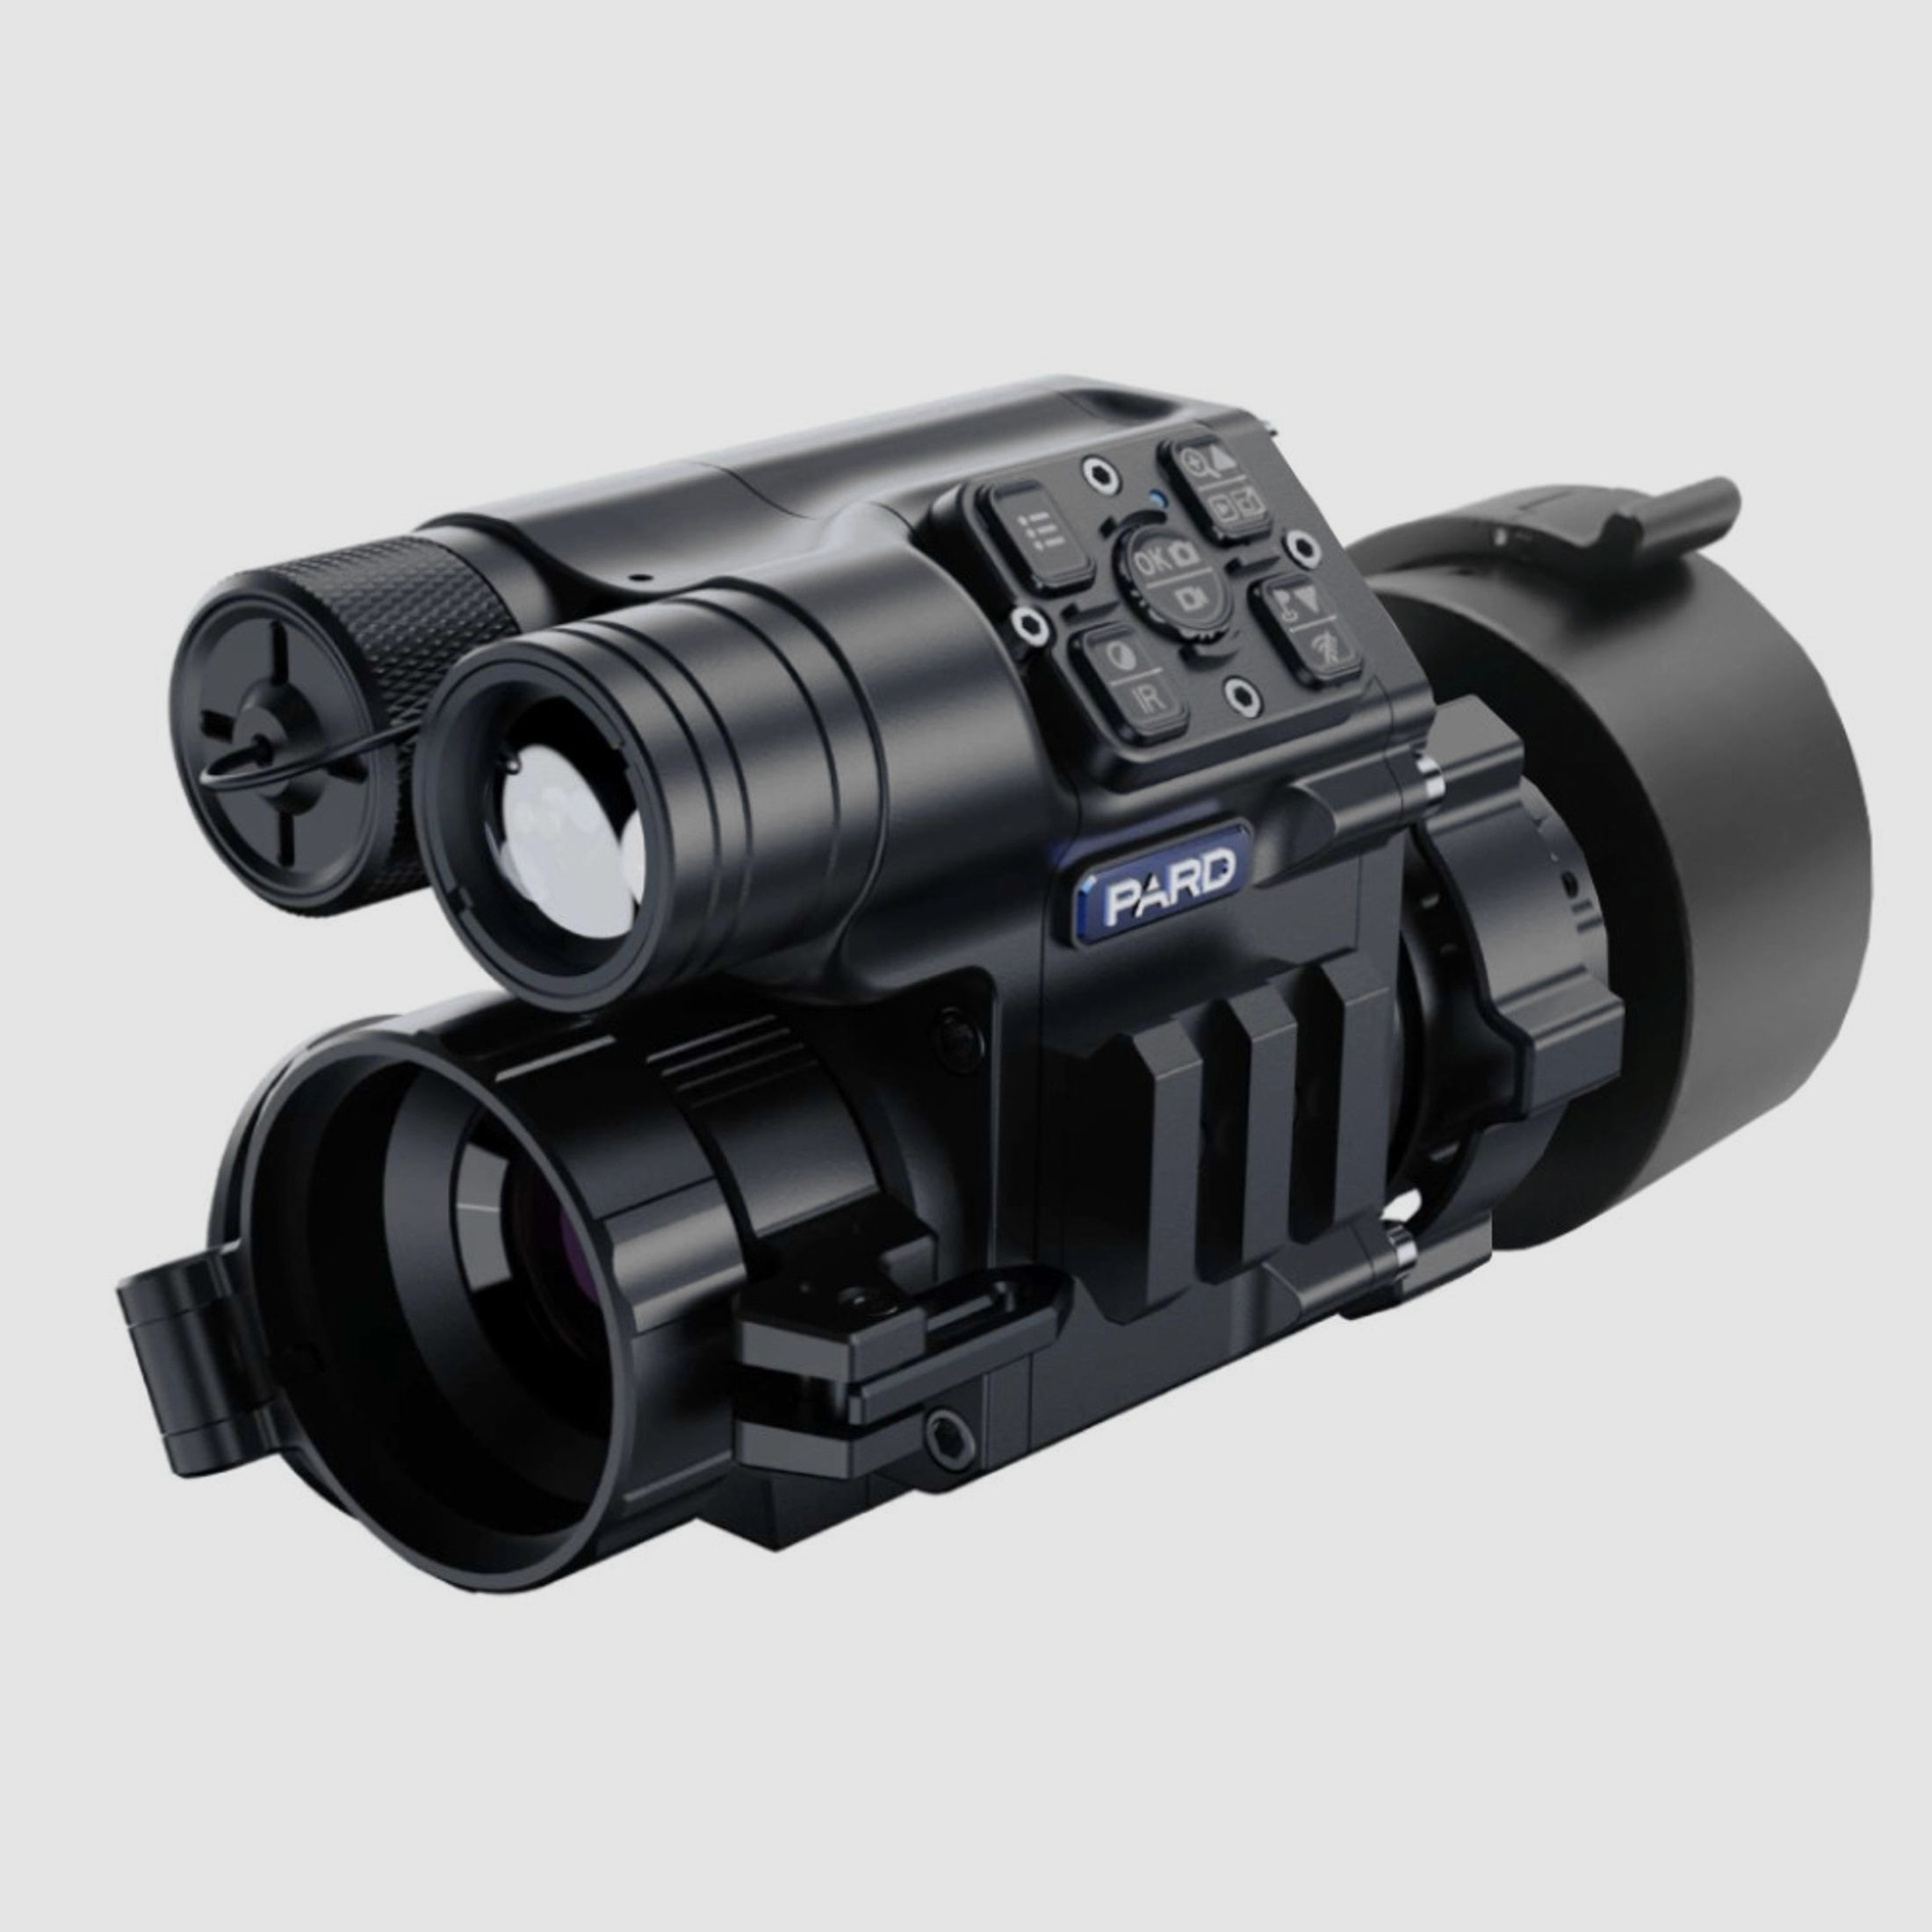 PARD FD1 Nachtsicht 3 in 1 Vorsatz, Monokular & Zielfernrohr - 940 nm ohne LRF 62 - 46 mm PARD Universaladapter (inkl. Reduzierringen)